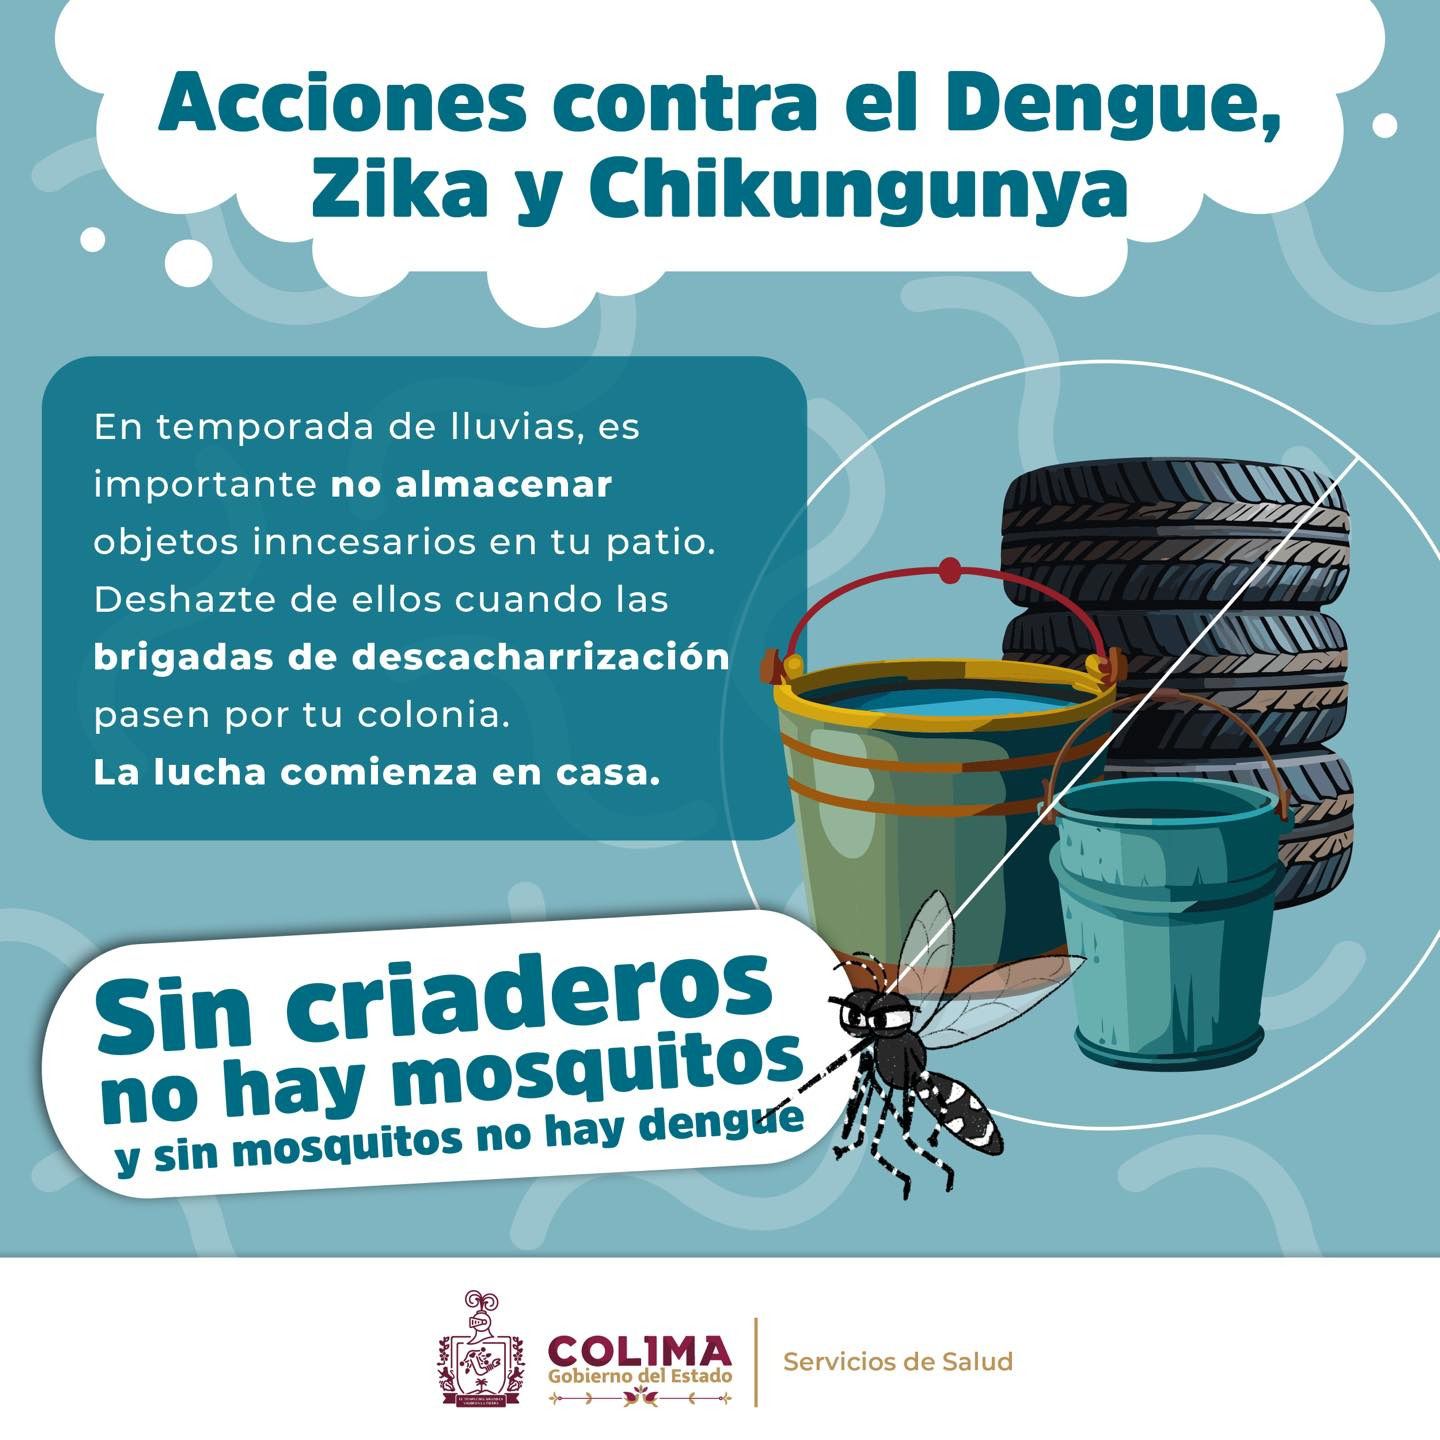 Acciones contra el dengue, zika y chikungunya